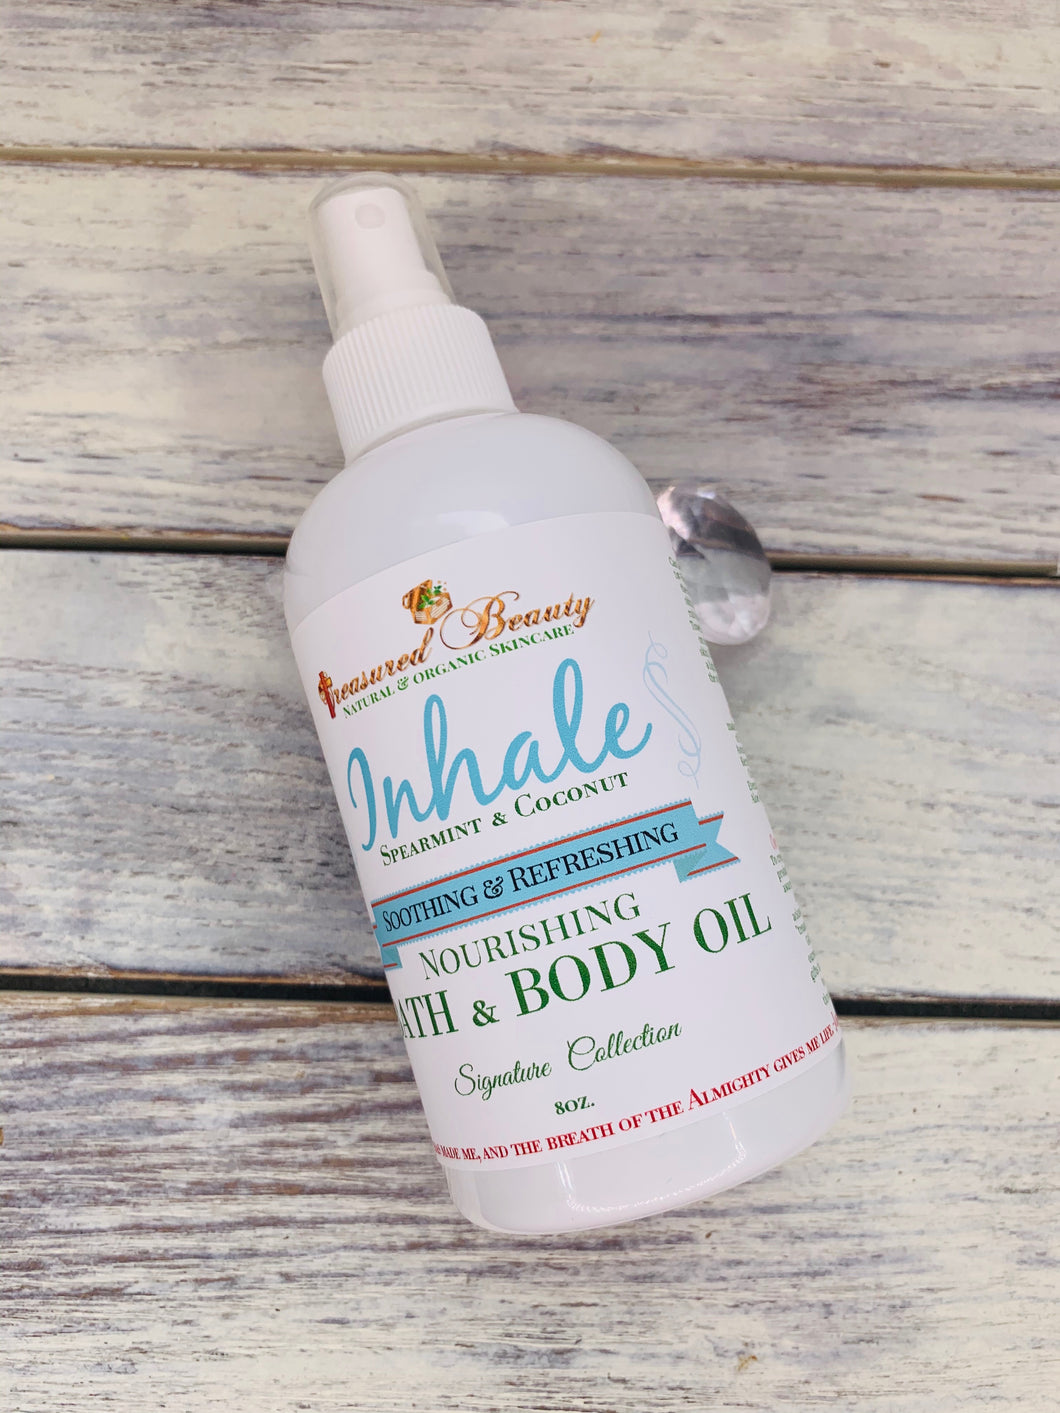 Inhale Bath & Body Oil